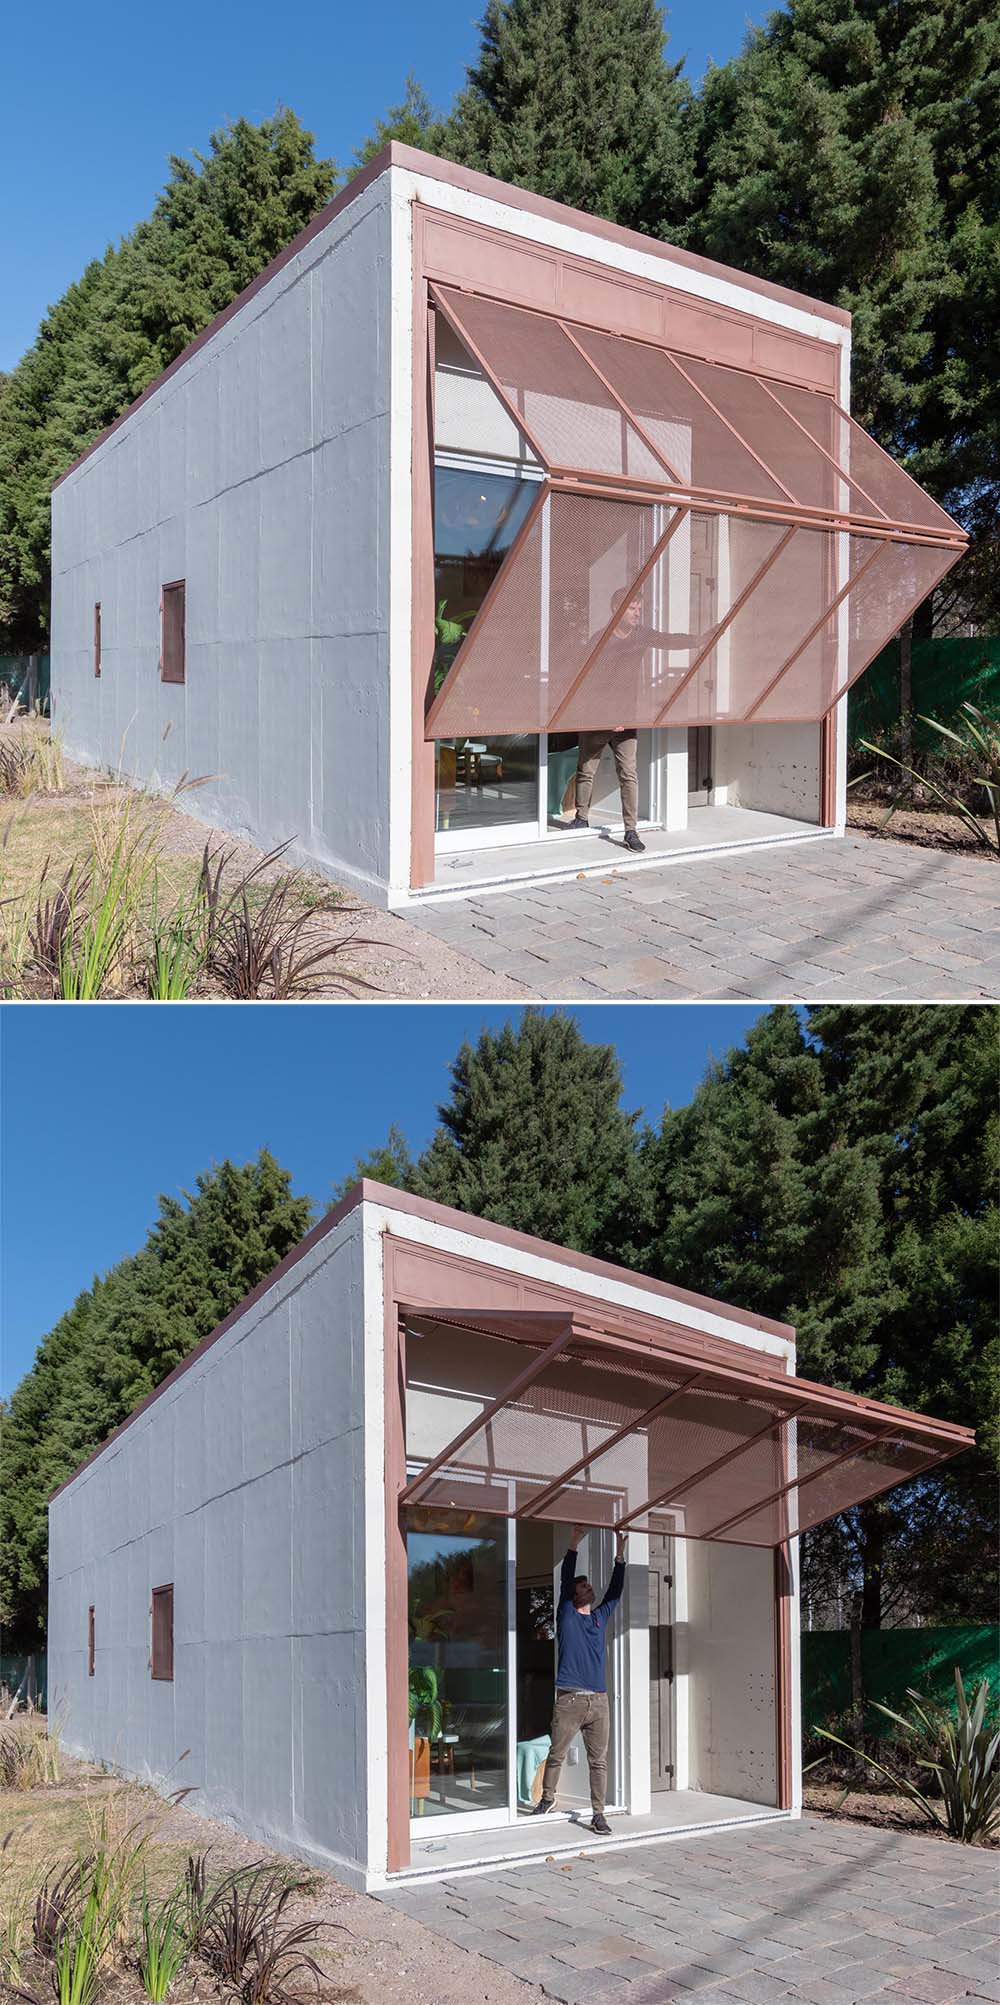 A modern precast concrete relocatable tiny home.